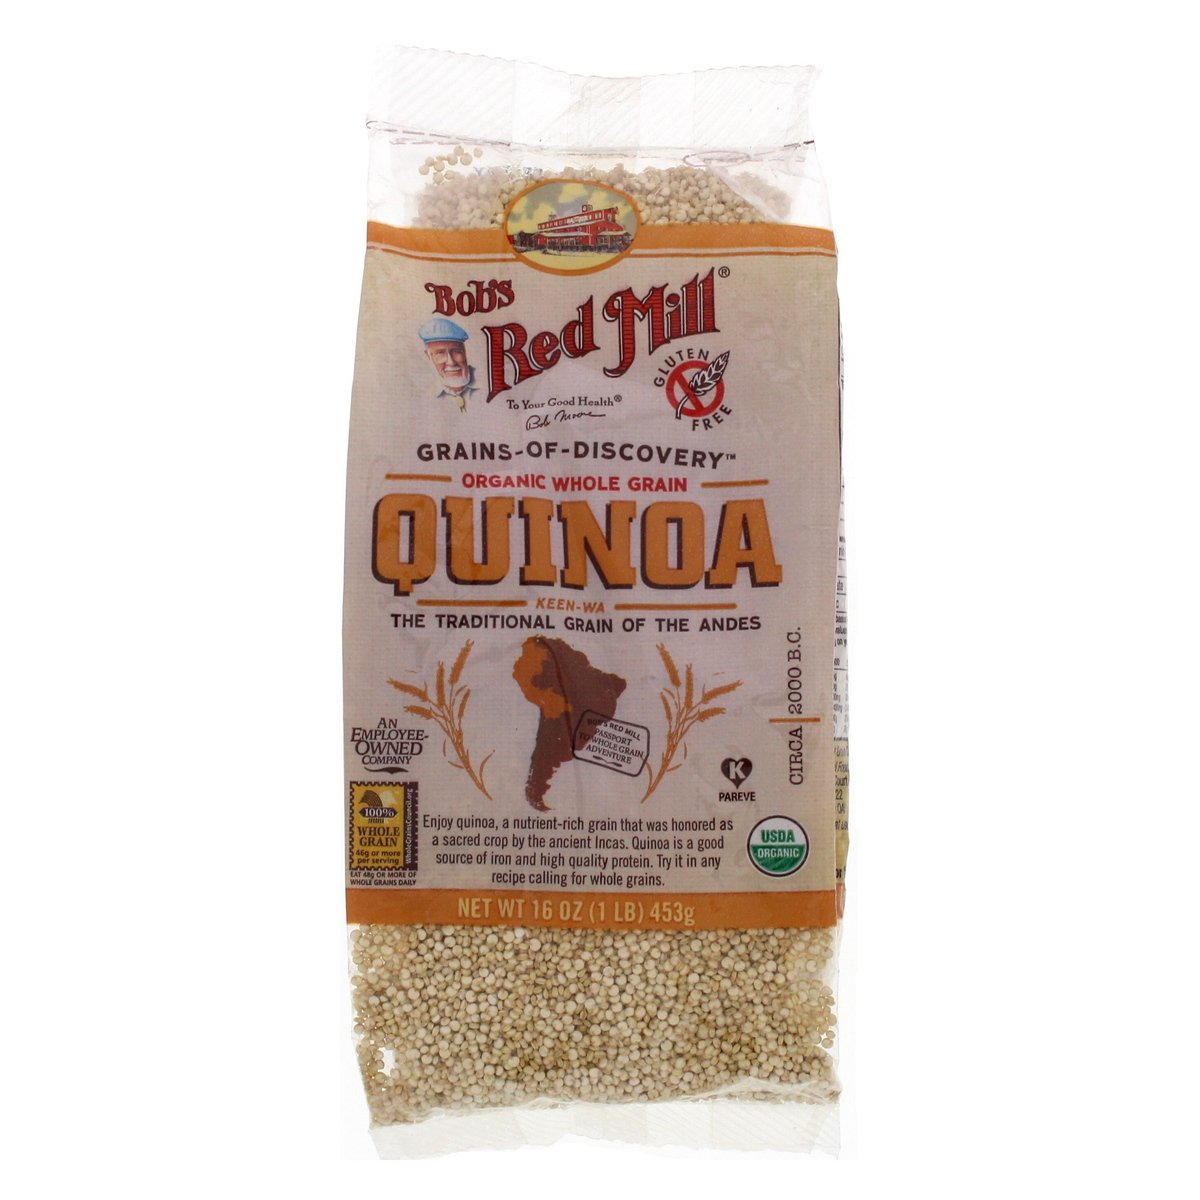 Bob's Red Mill Organic Whole Grain Quinoa 453 g